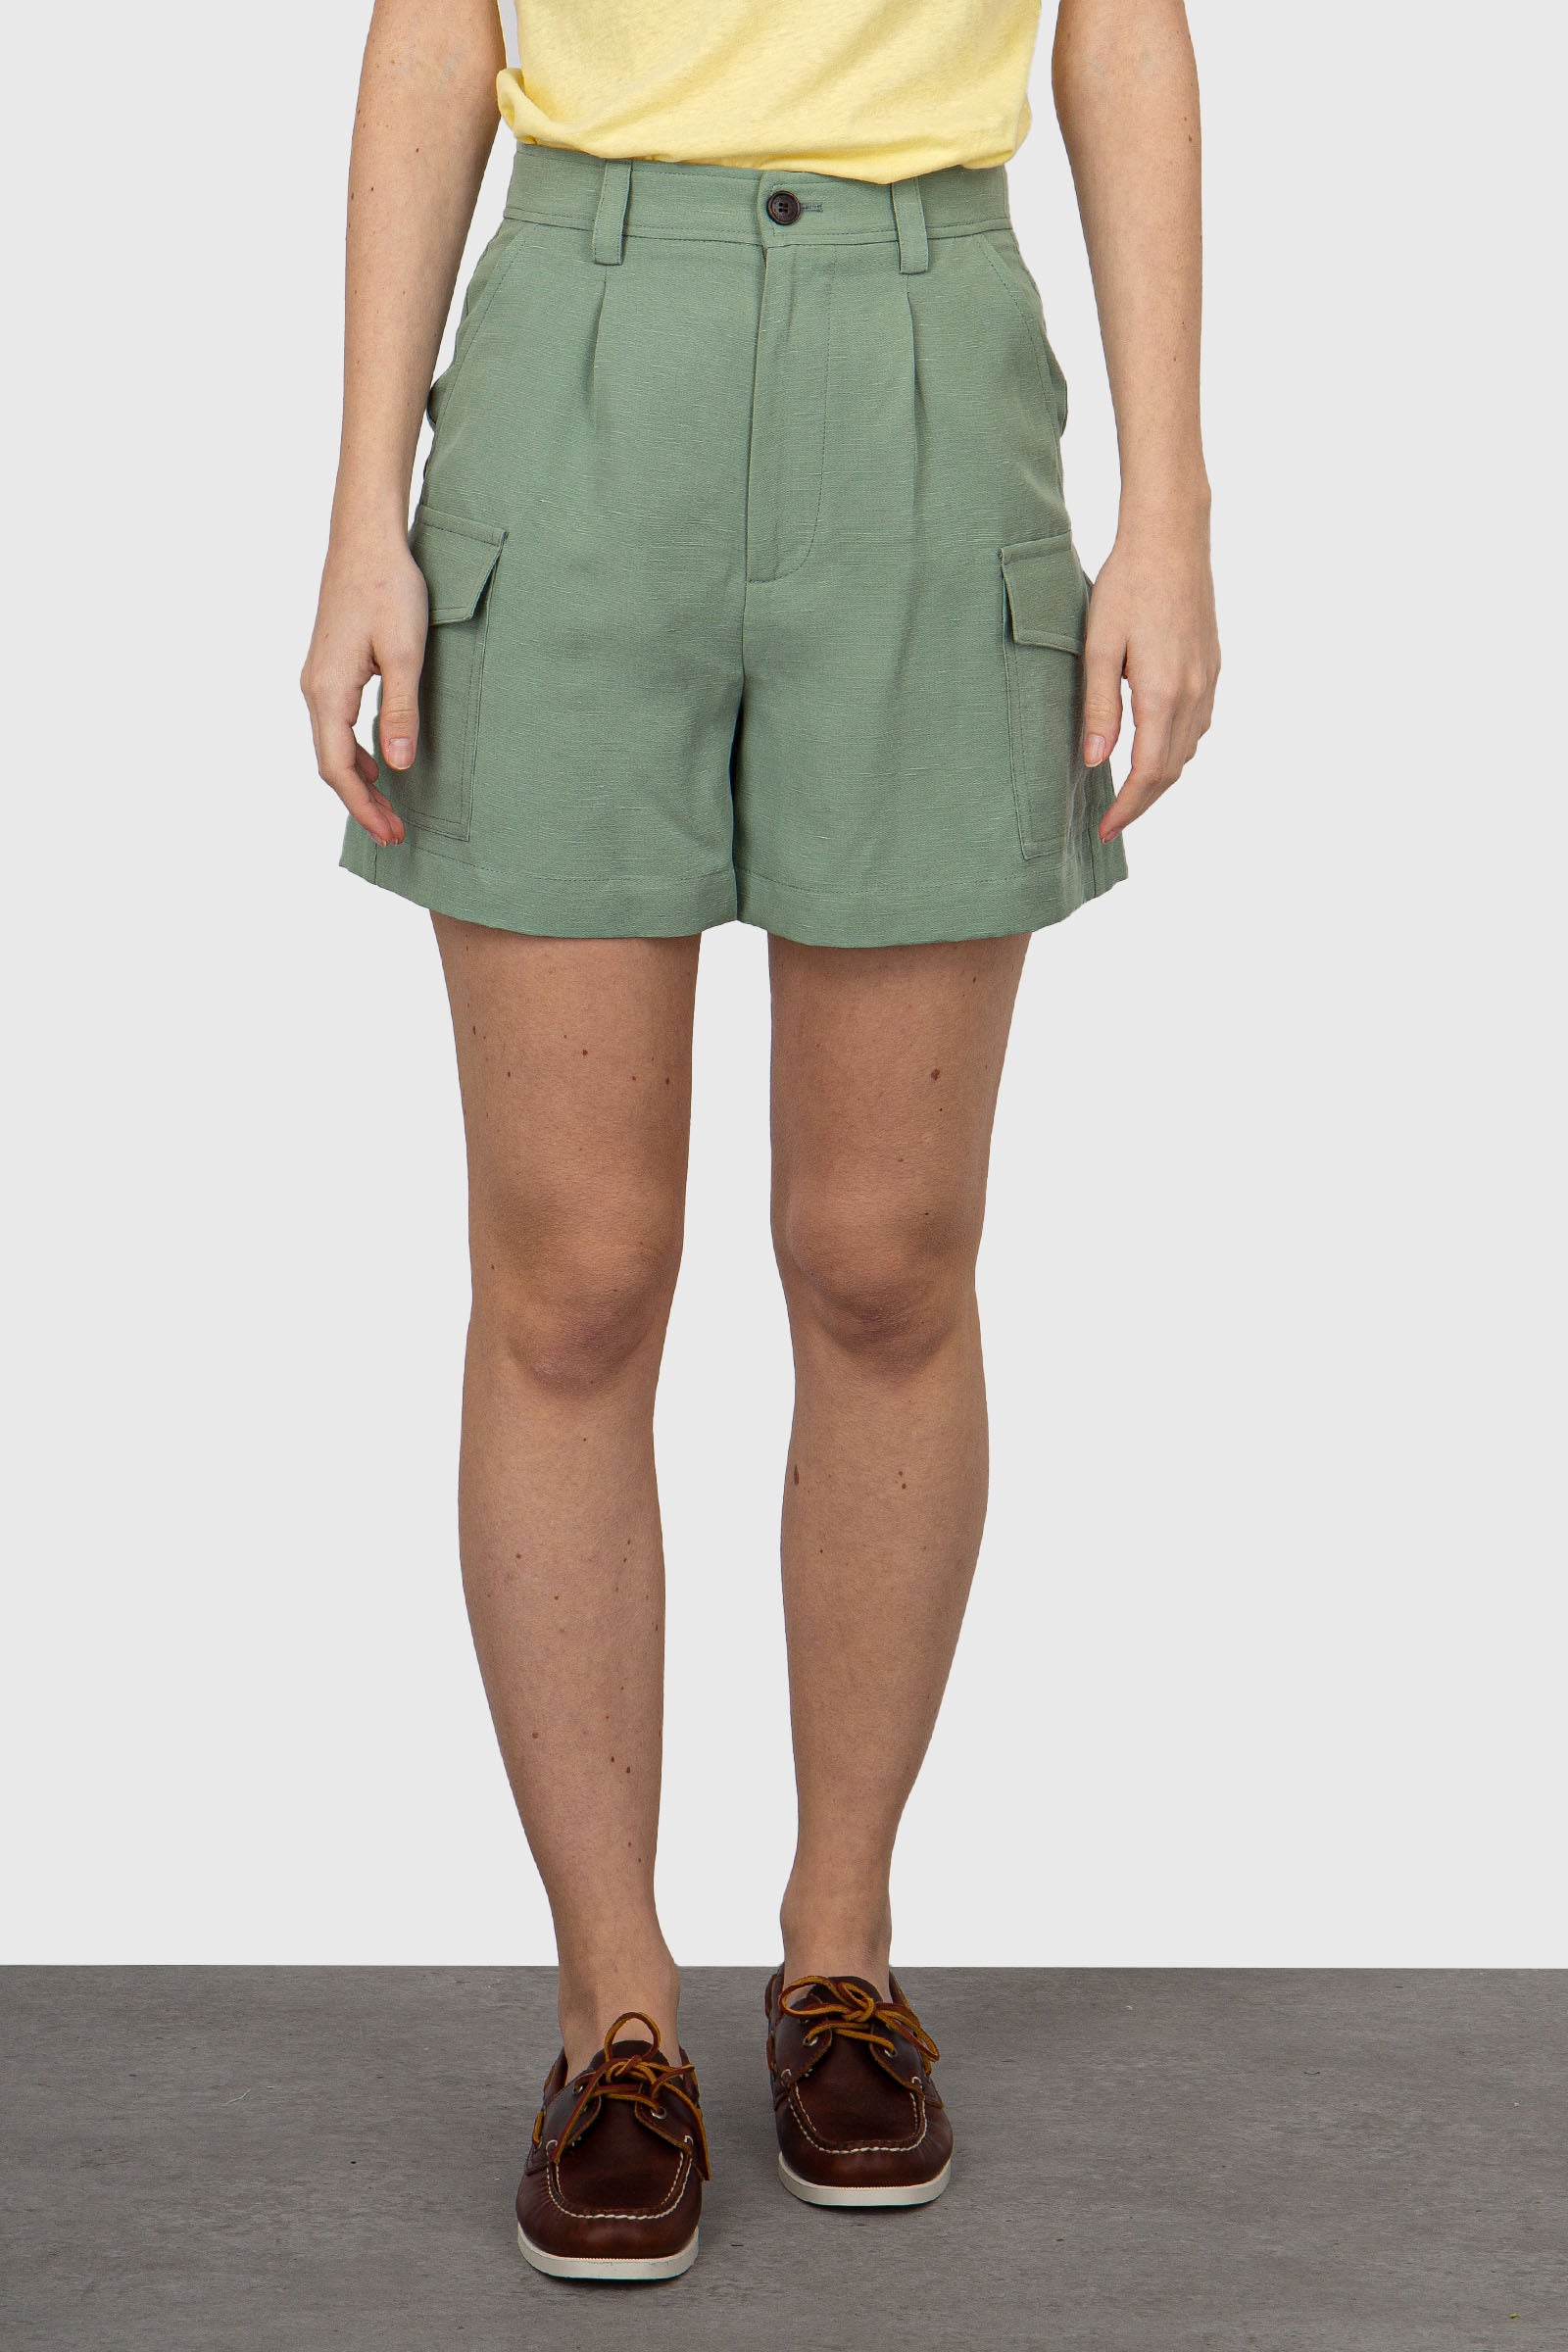 Woolrich Mint Green Linen/Viscose Shorts - 3